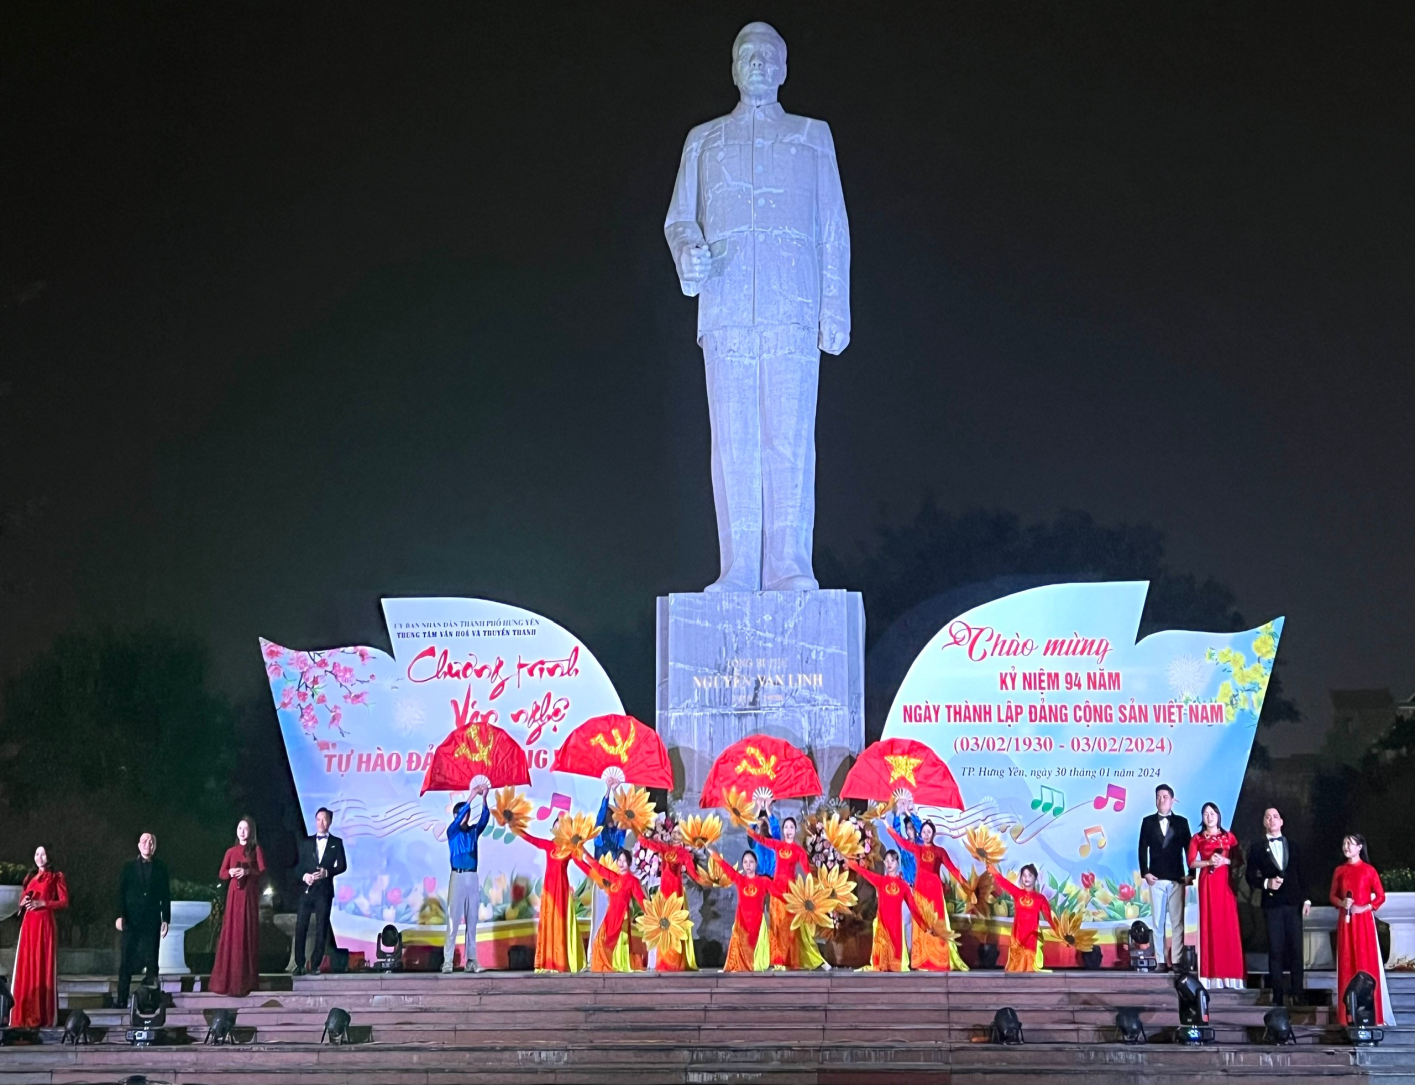 Thành phố Hưng Yên tổ chức chương trình văn nghệ kỷ niệm 94 năm ngày thành lập Đảng Cộng sản Việt nam ( 3/2) và mừng xuân Giáp Thìn năm 2024